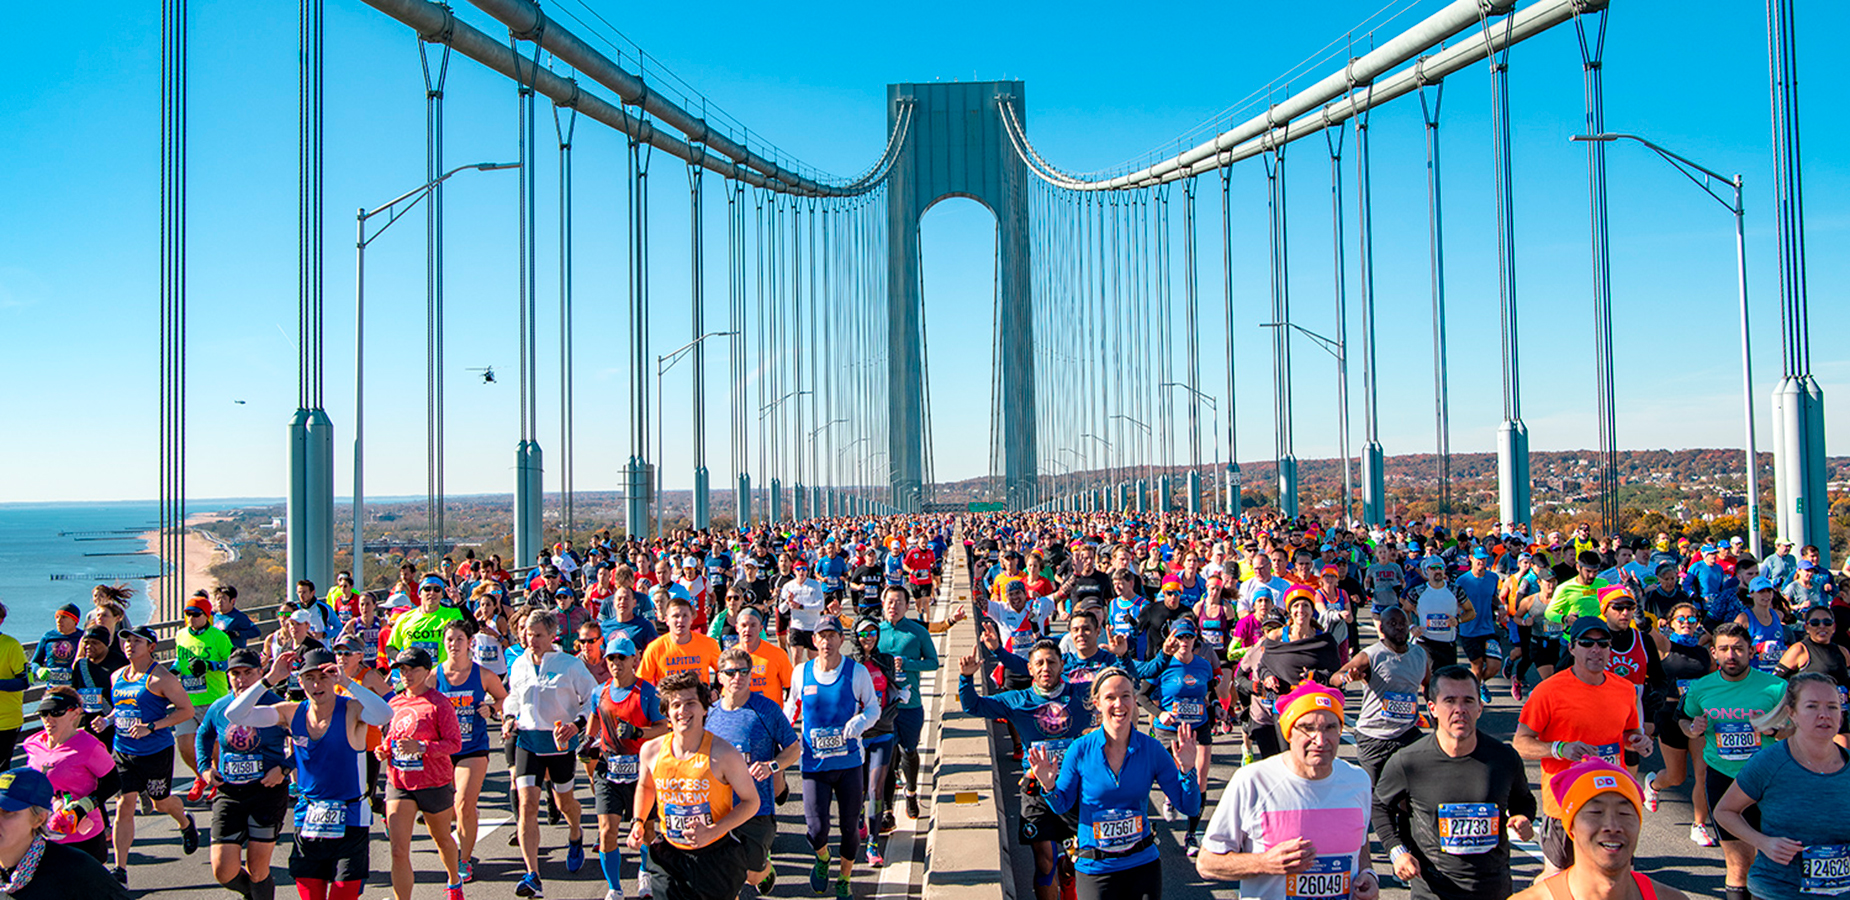 New York Marathon er én af seks ”Marathon Majors” – altså én af verdens største og mest prestigefyldte maratonløb, 